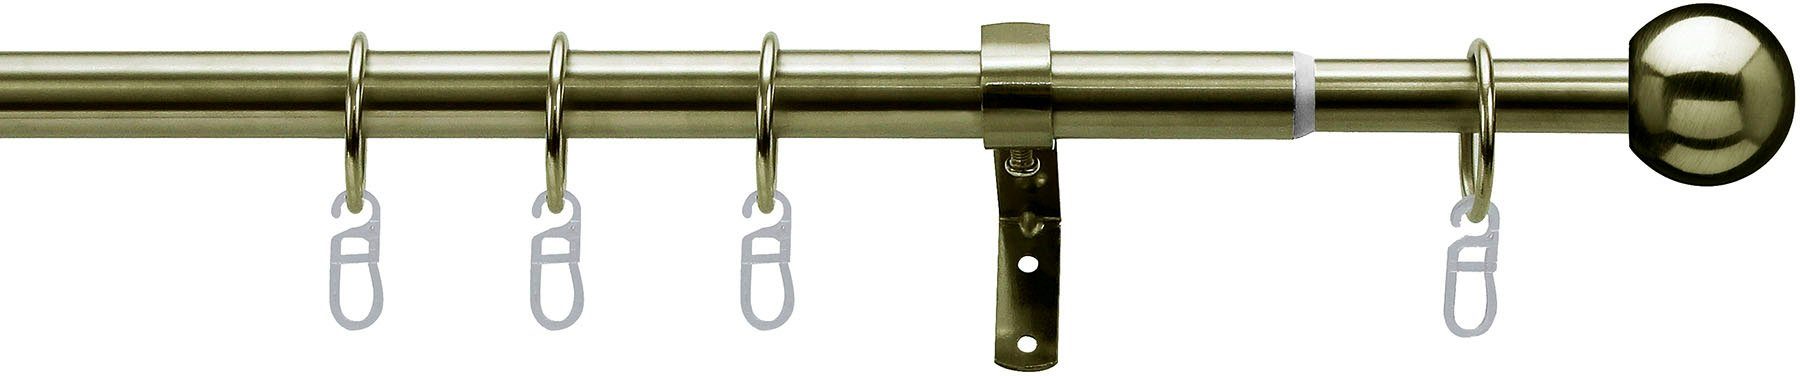 Gardinenstange Formentor, indeko, Ø 20 mm, 1-läufig, ausziehbar, verschraubt, Stahl, stufenlos verstellbare Teleskopstange antikmessingfarben